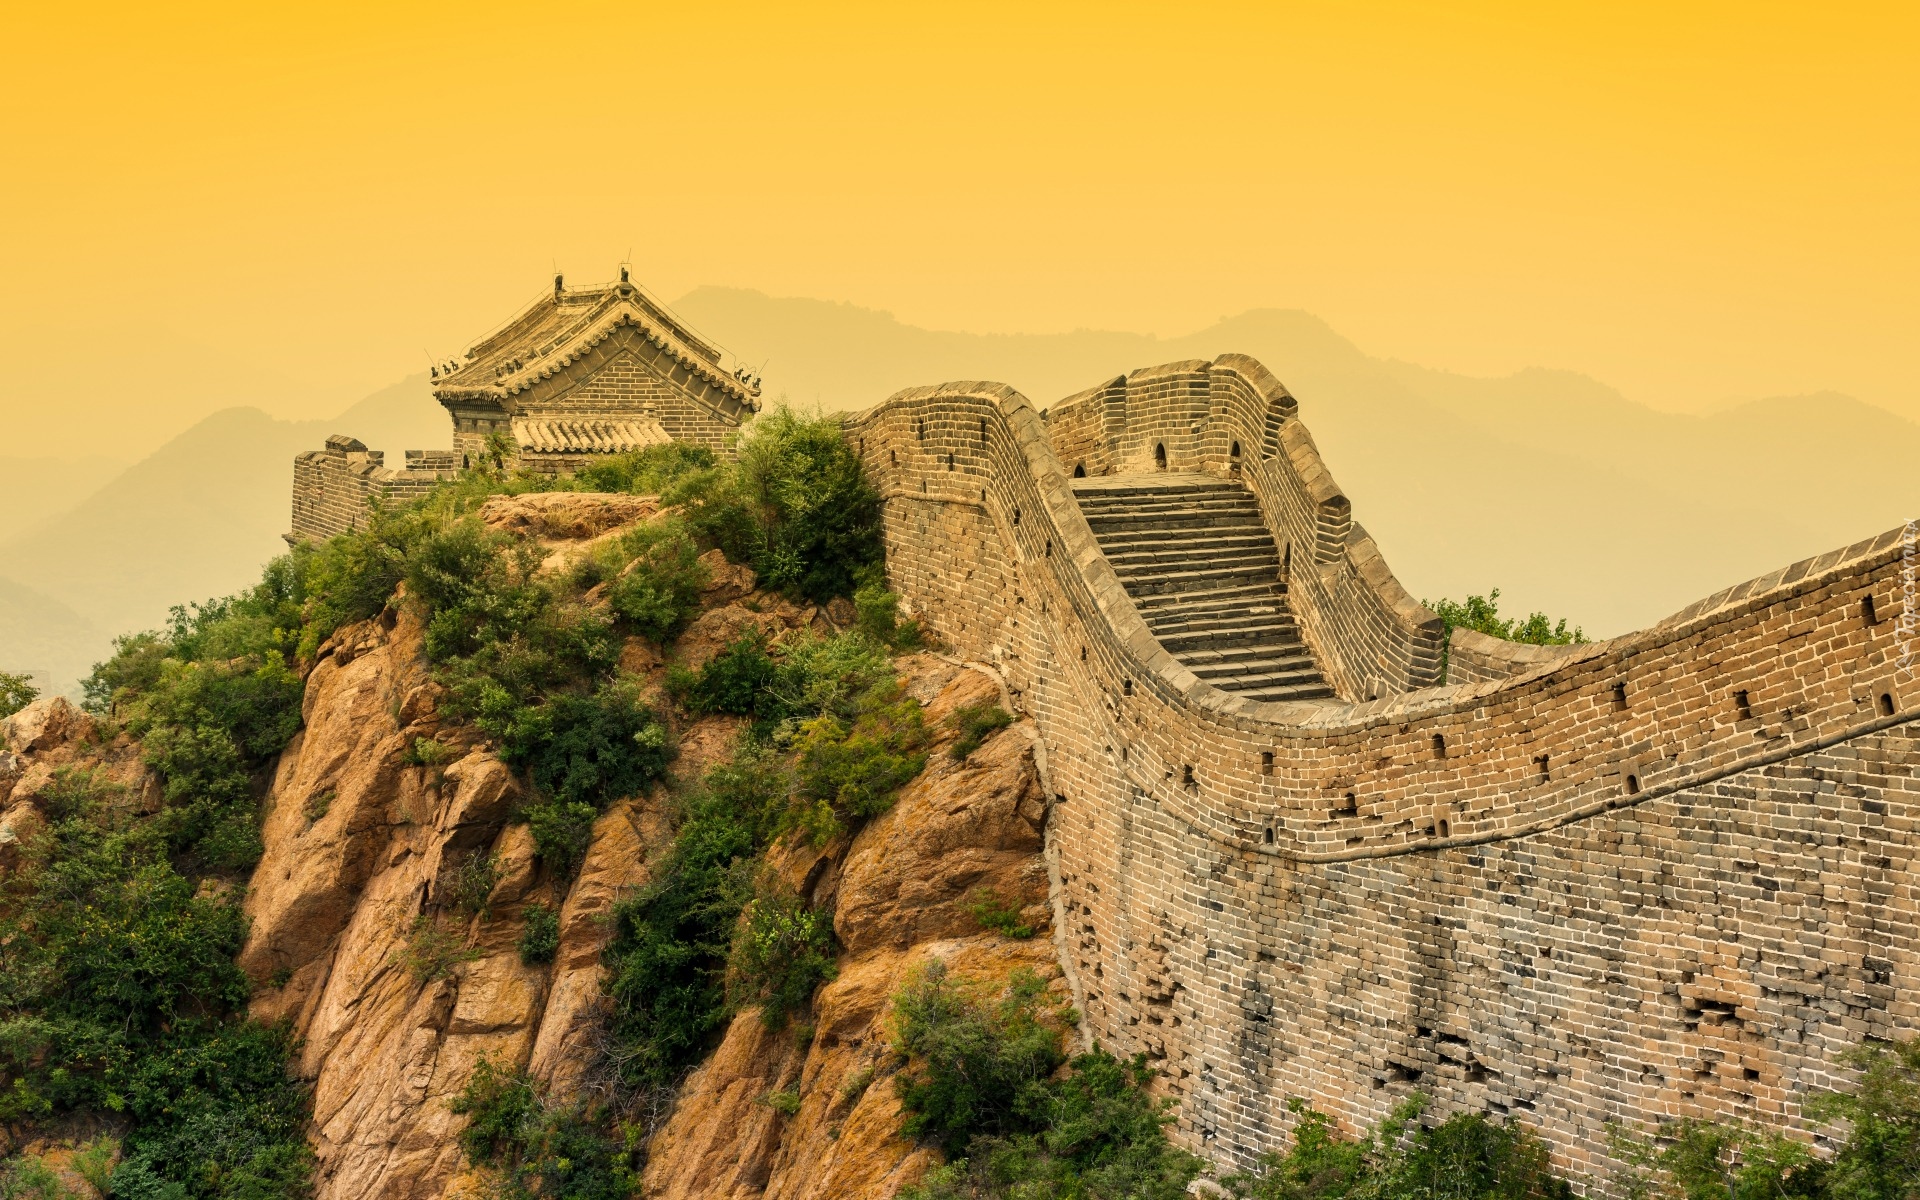 Chiny, Wielki Mur Chiński, Skały, Mur obronny, Wieża obserwacyjna,  Góry Nan Shan